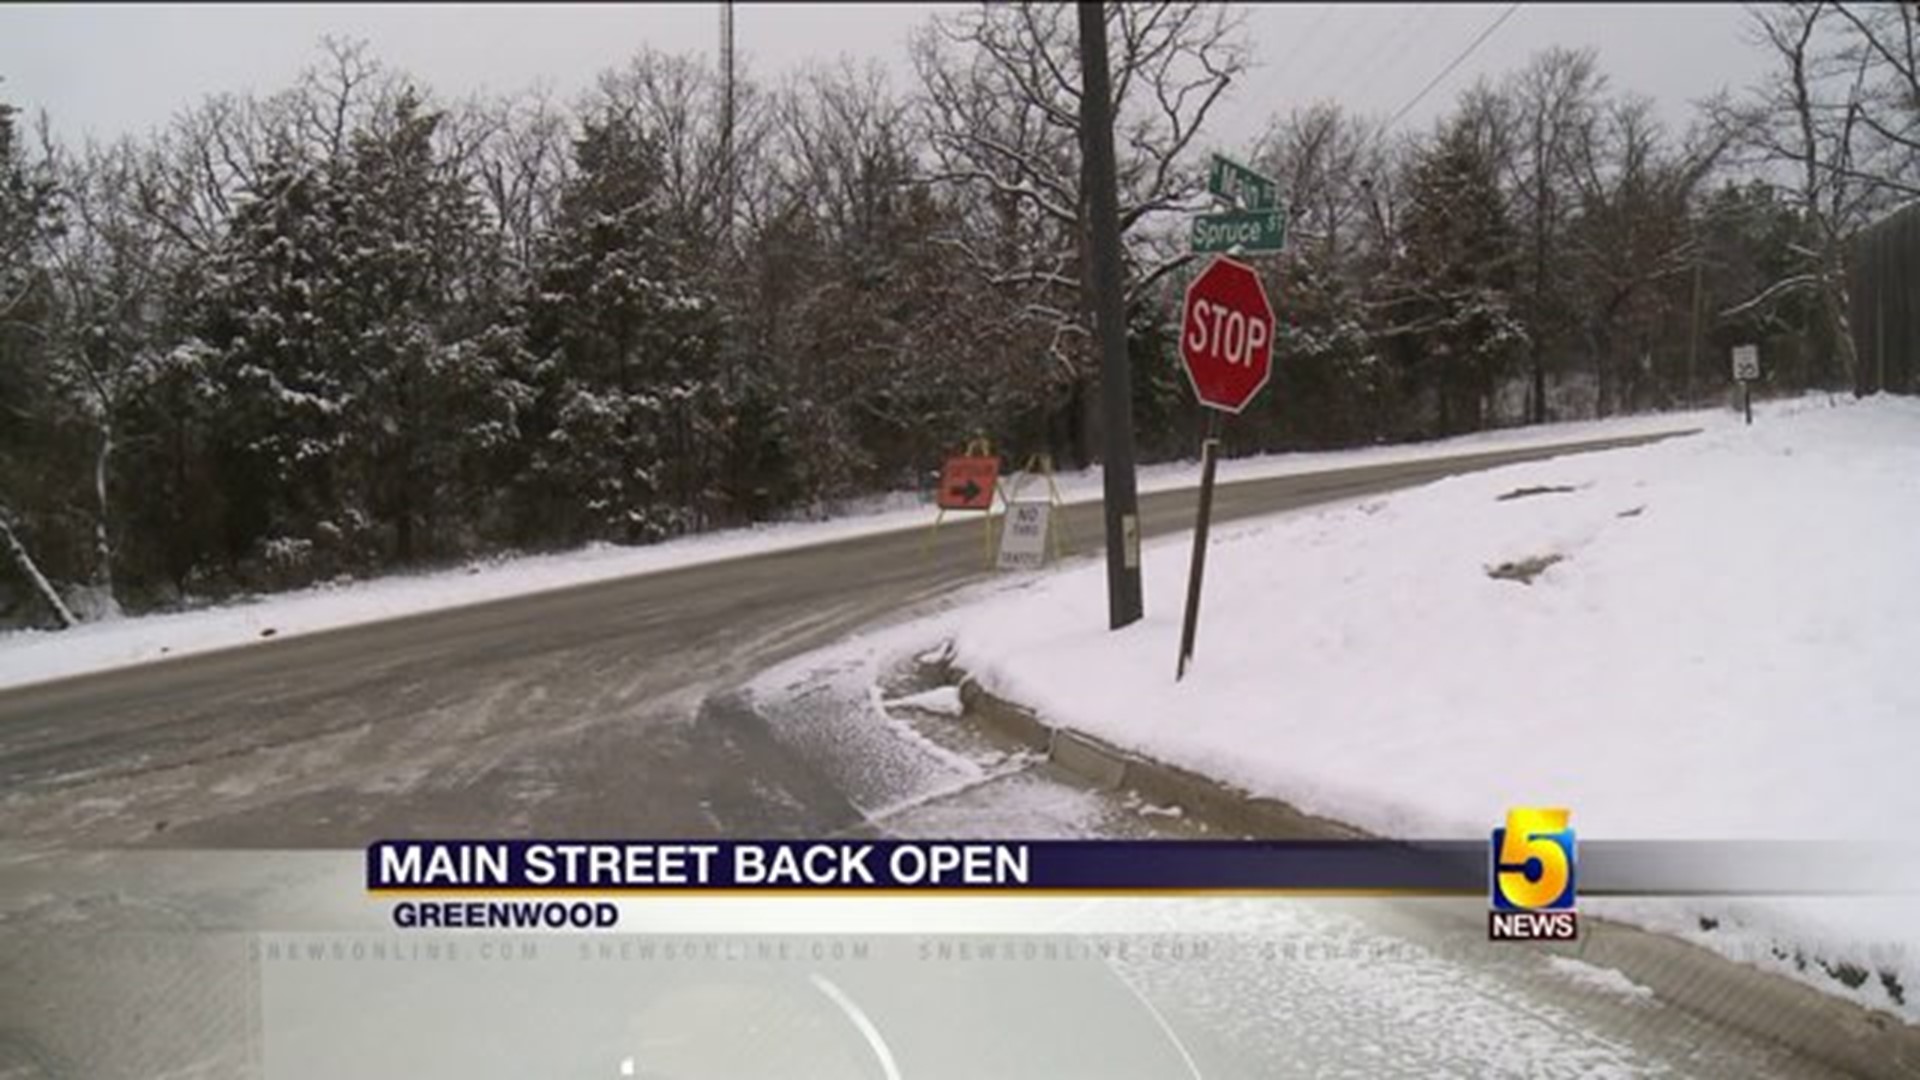 Main Street Back Open